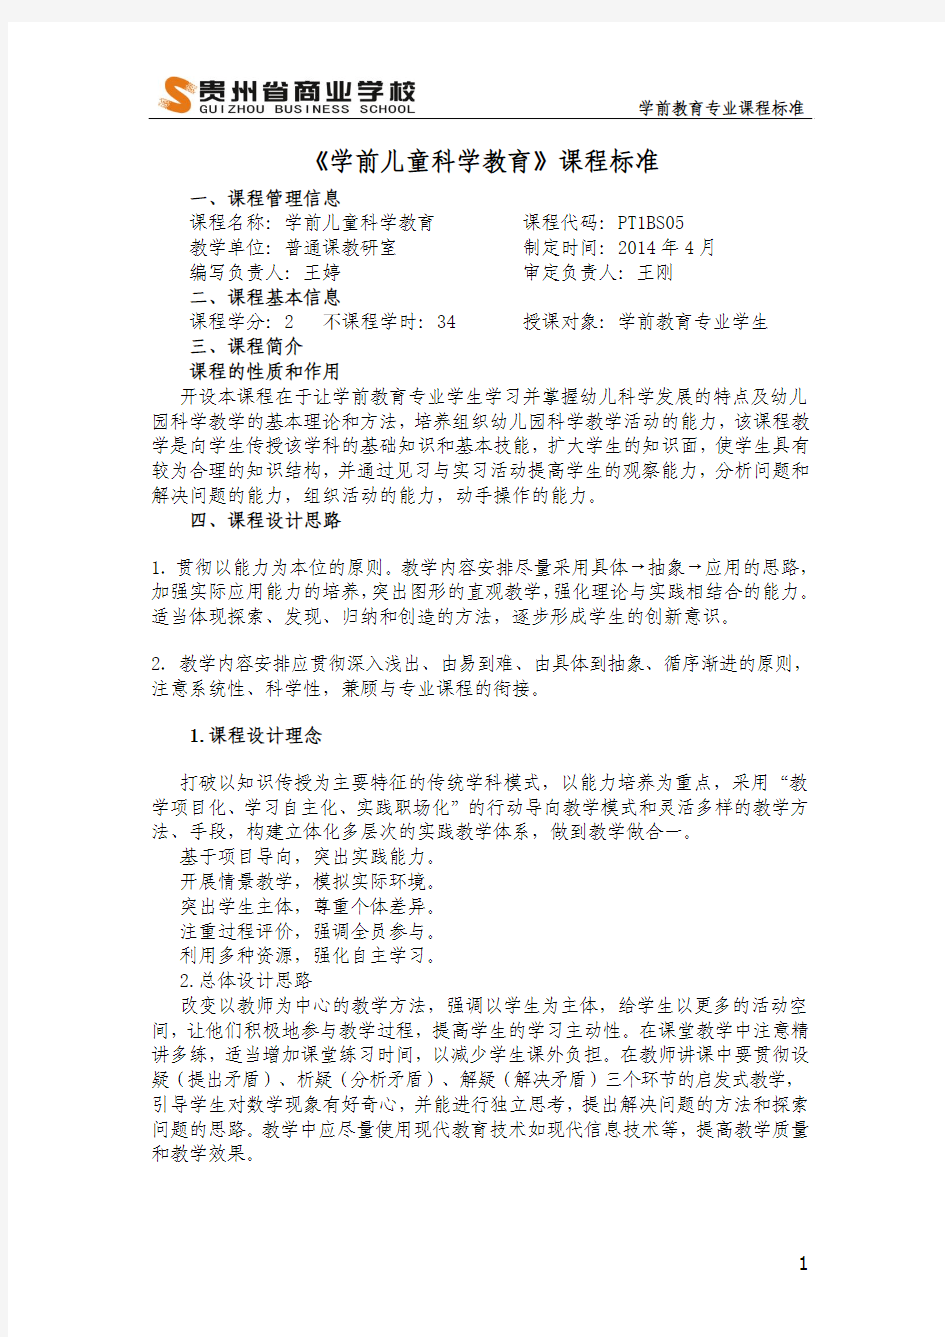 贵州省商业学校学前儿童科学教育课程标准王婷(1) (1)